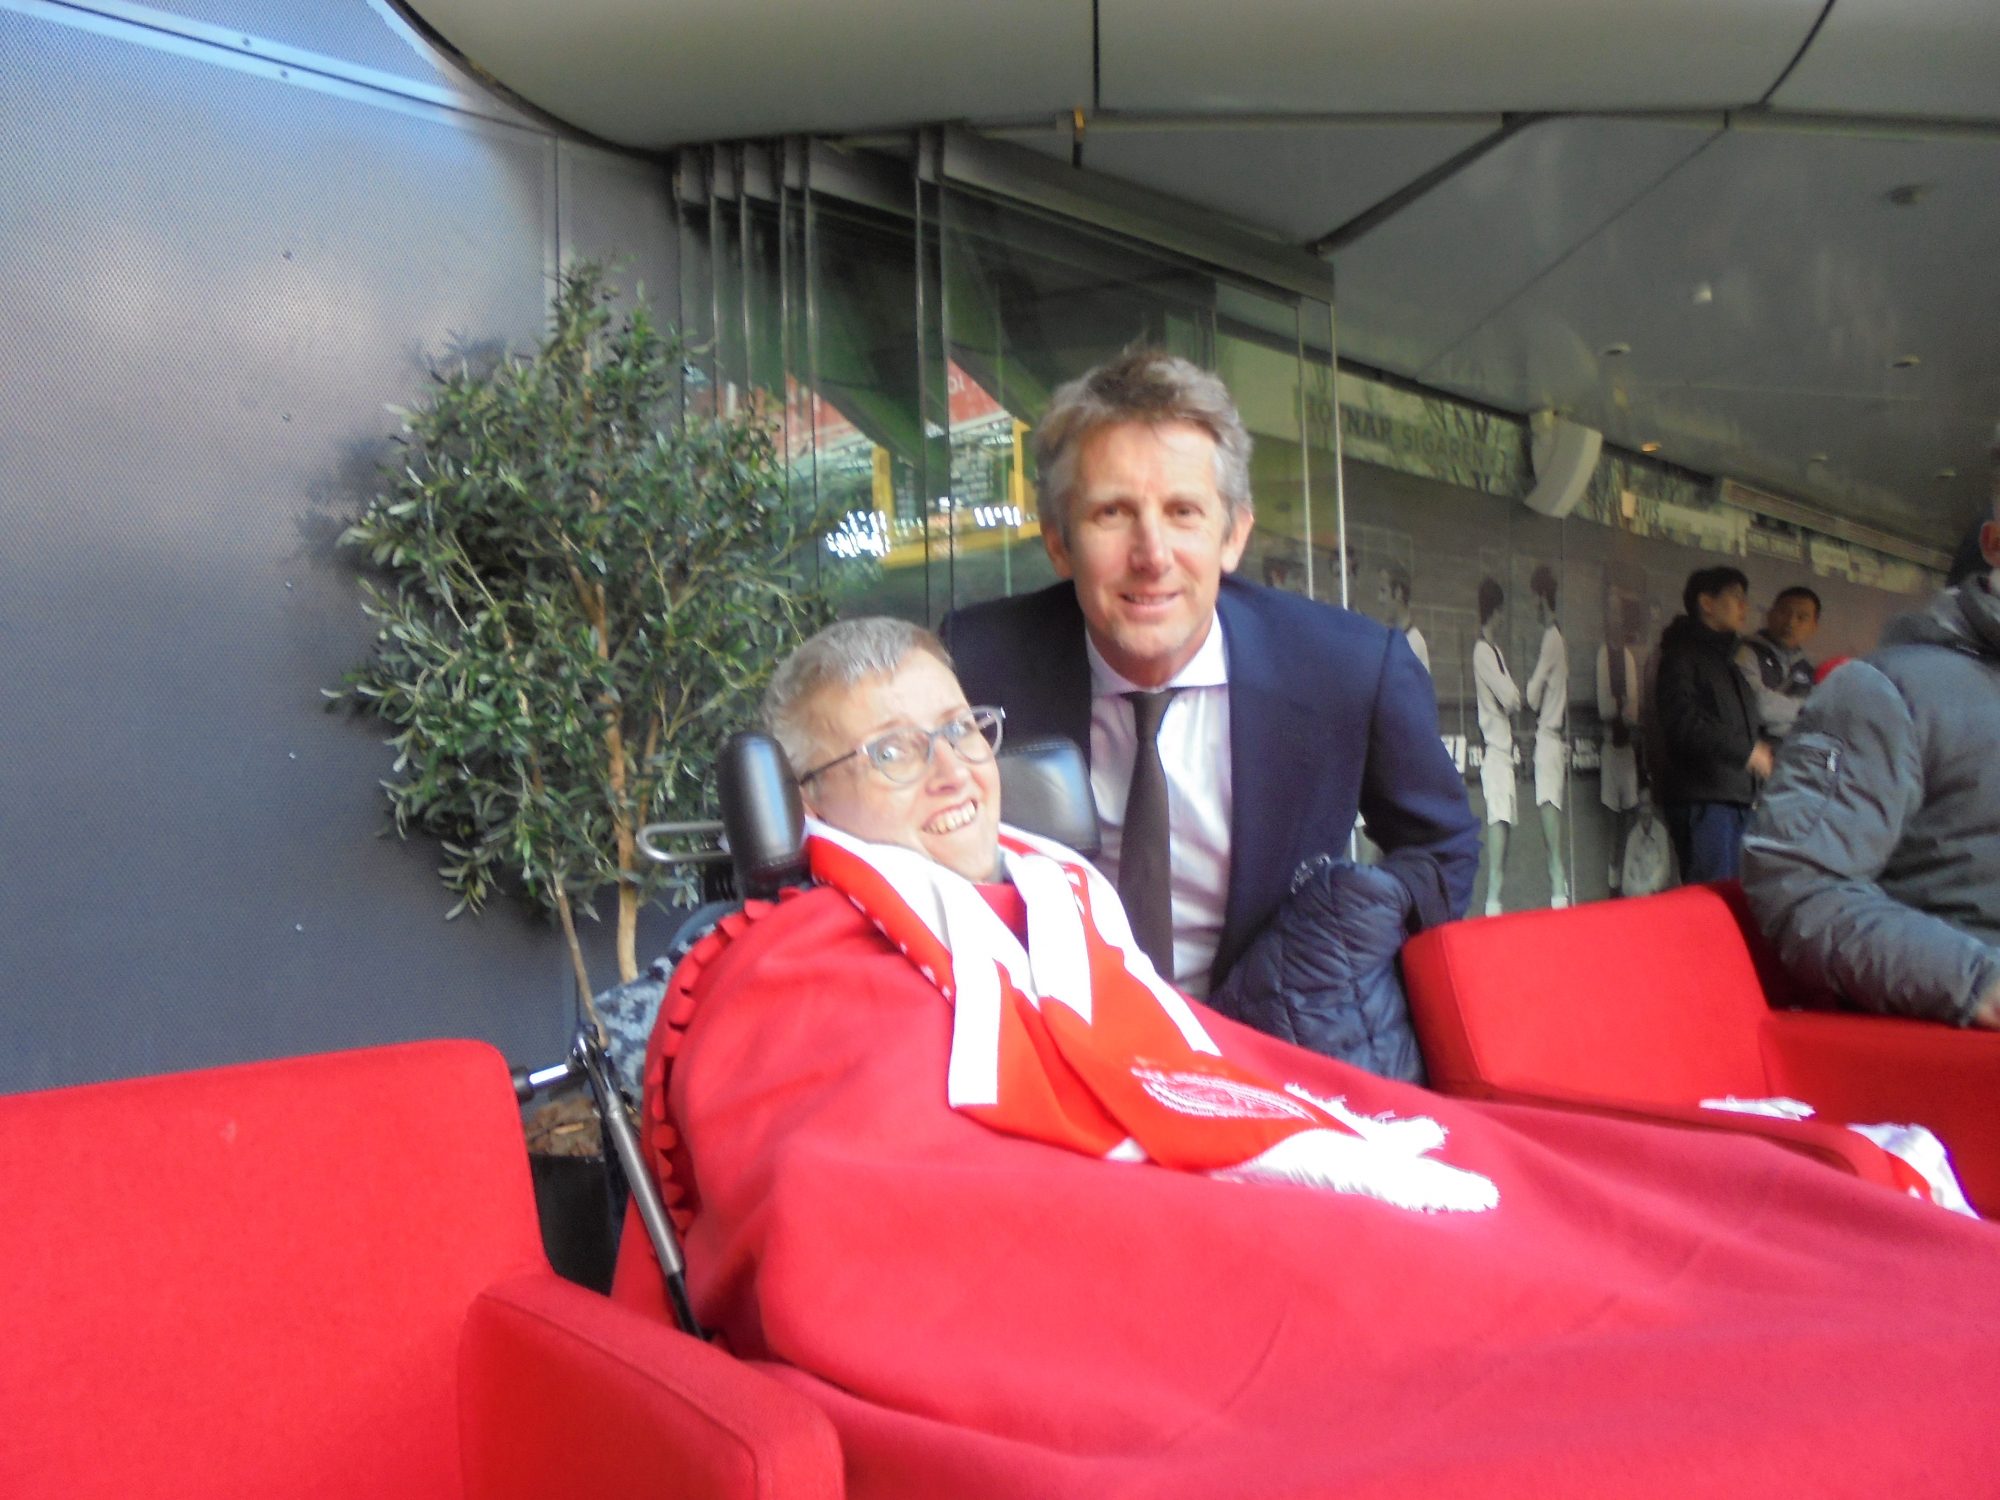 Daniëlle samen met Ajax-directeur en voormalig topkeeper Edwin van der Sar op de foto.